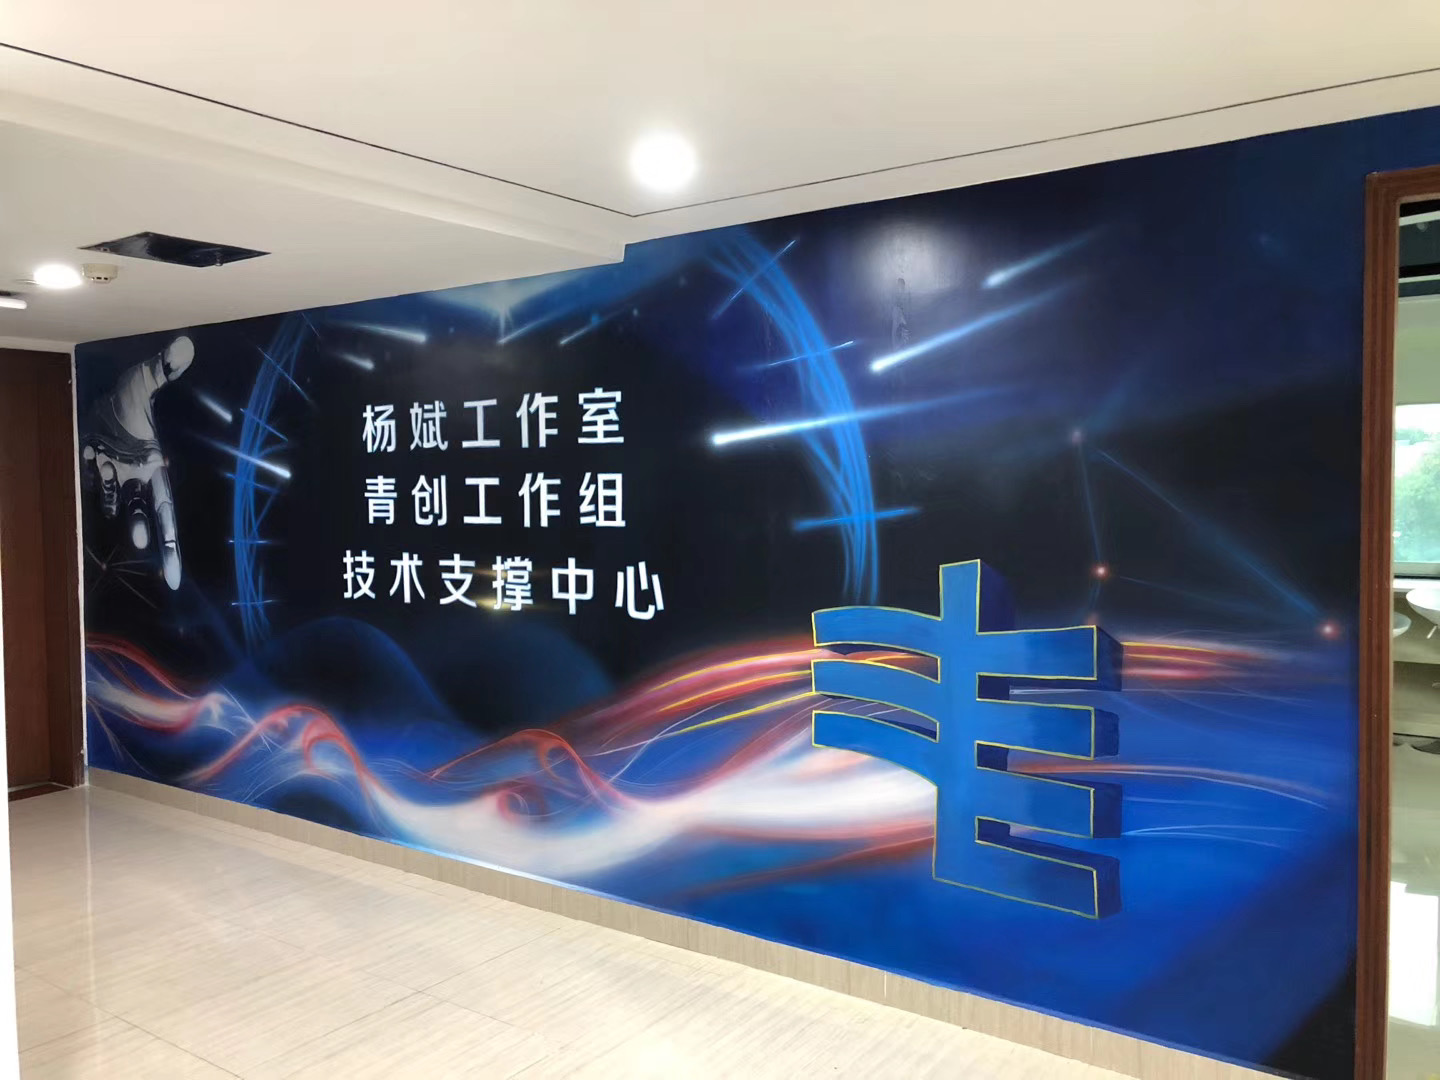 廣州墻繪南方電網技術中心辦公室墻體彩繪案例